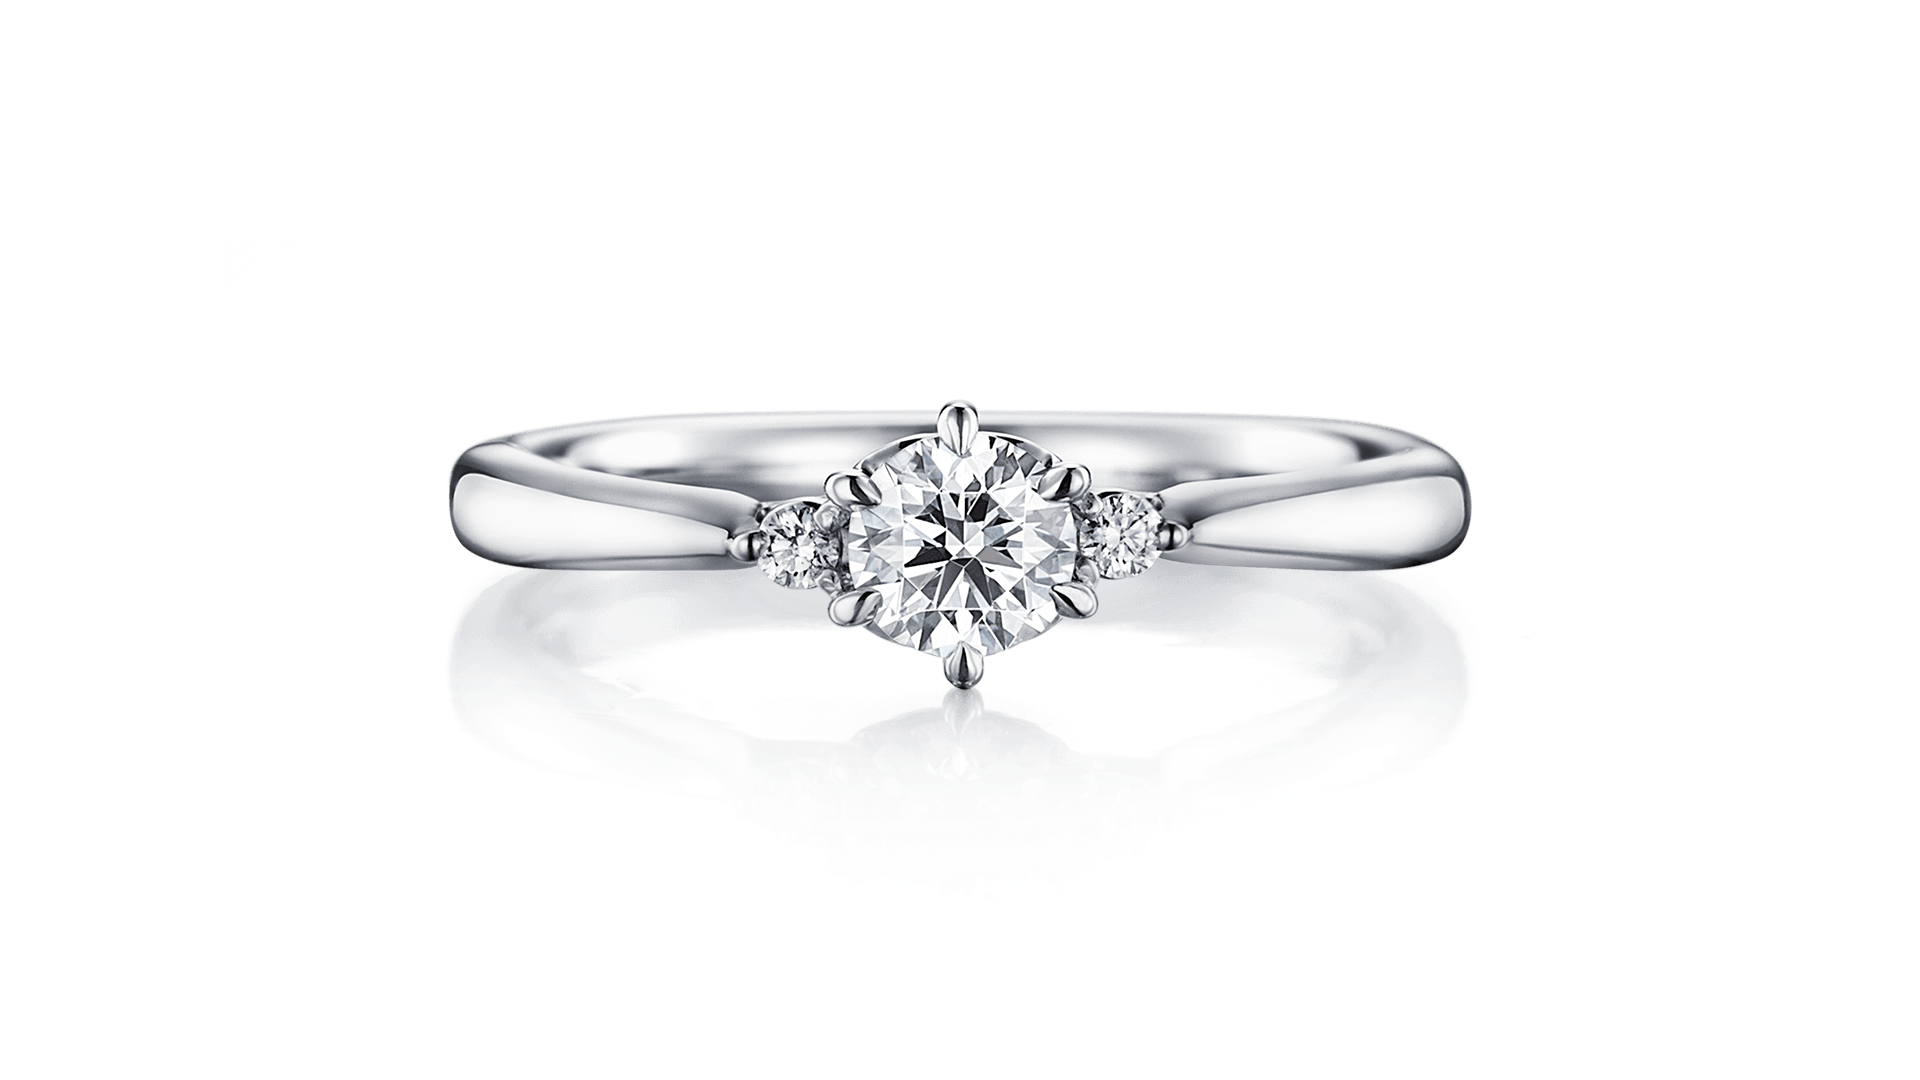 ♡バレンタインプロポーズにオススメの婚約指輪♡